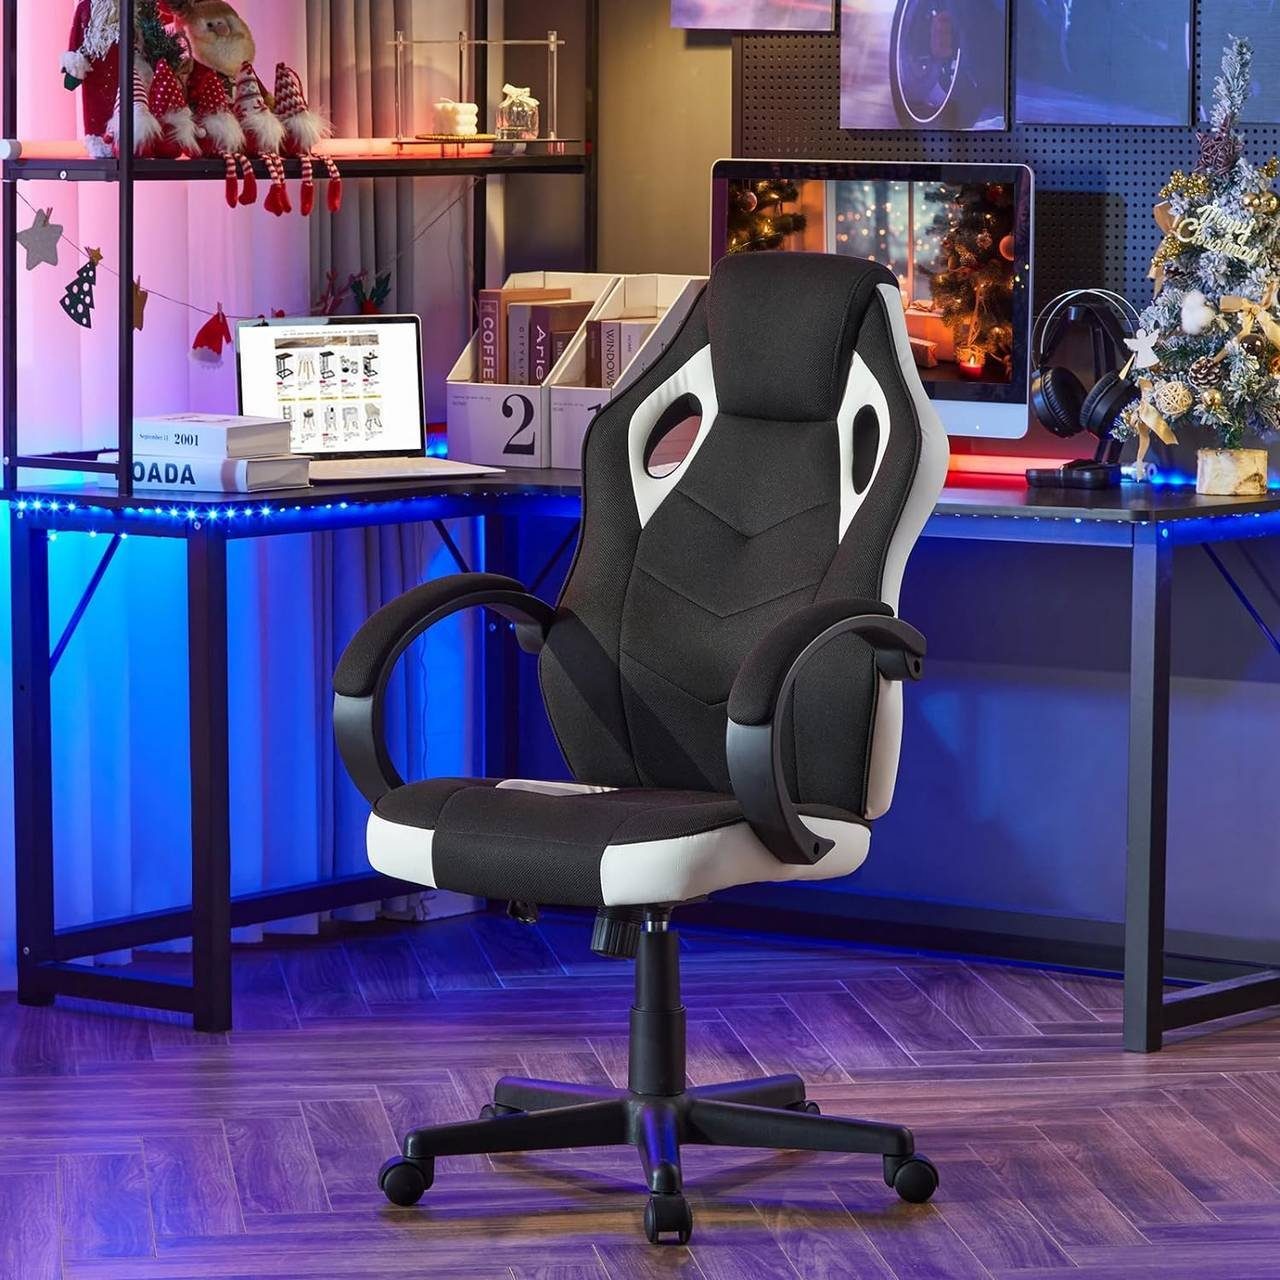 Weiß+Schwarz (1 drehbar höhenverstellbar Woltu St), Bürostuhl, Gaming-Stuhl ergonomisch